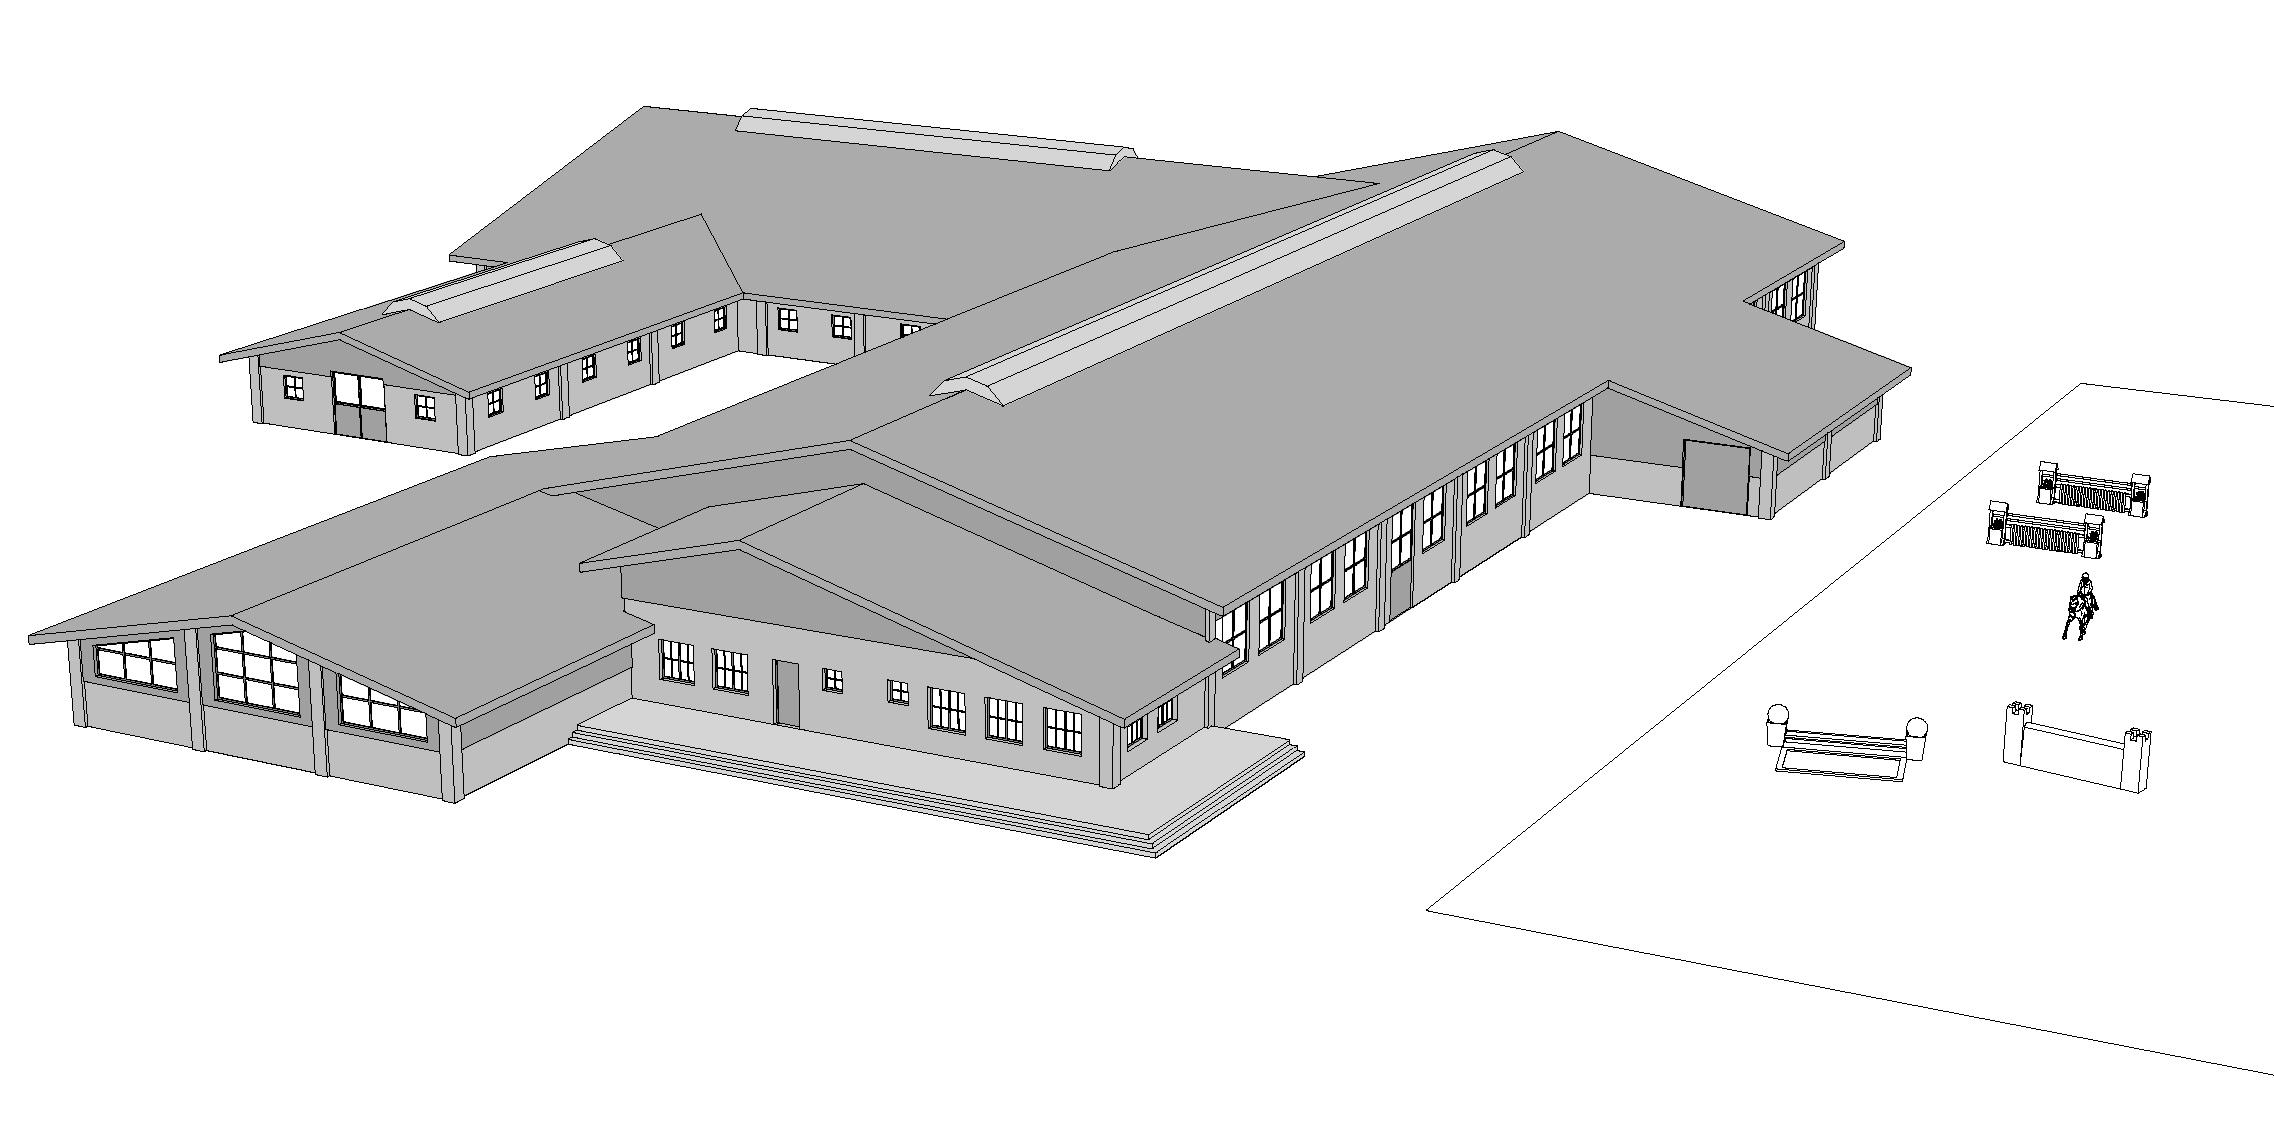 Architektonische Skizze eines Reitstall-Komplexes von EQUUS DESIGN PLANUNG mit mehreren verbundenen Gebäuden und einem Übungsplatz mit Springhindernissen im Vordergrund.